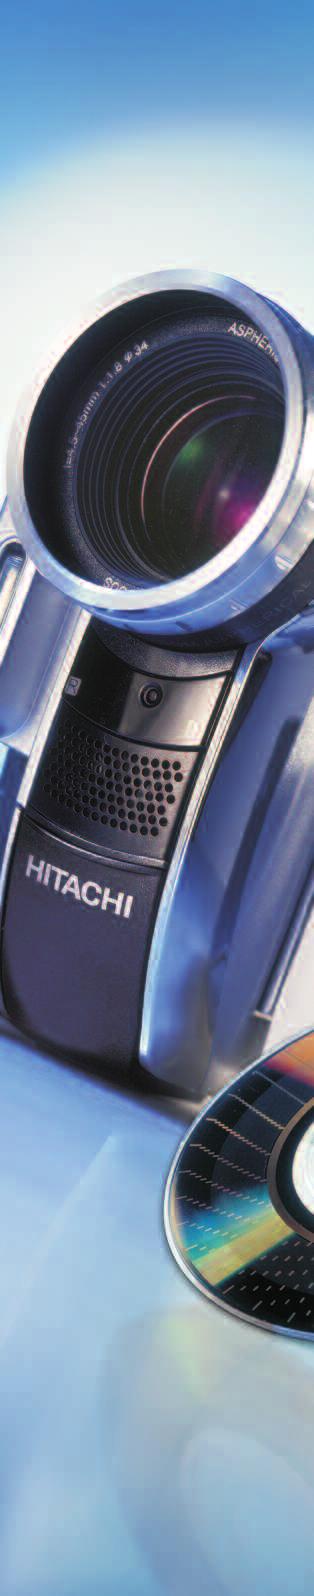 HITACHI DIGITAL MEDIA Hitachi Europe Via Tommaso Gulli 39 20147 Milano Tel. 02 / 48.78.61 Servizio Cortesia: 02 / 38.07.34.15 www.hitachi.